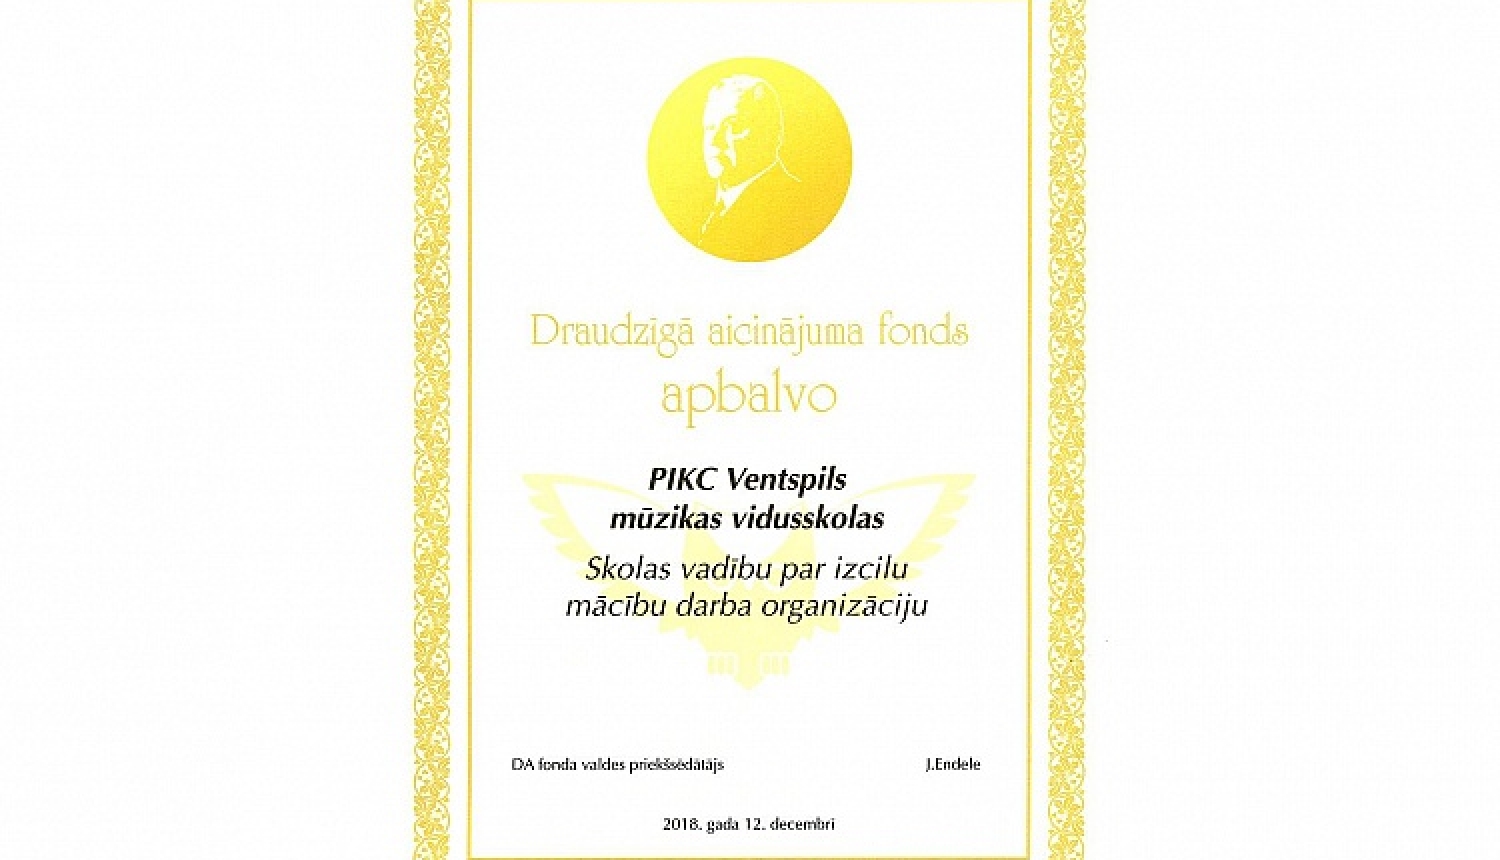 PIKC “Ventspils Mūzikas vidusskola” ieguvusi 3. vietu Draudzīgā aicinājuma skolu reitingā specializēto skolu nominācijā